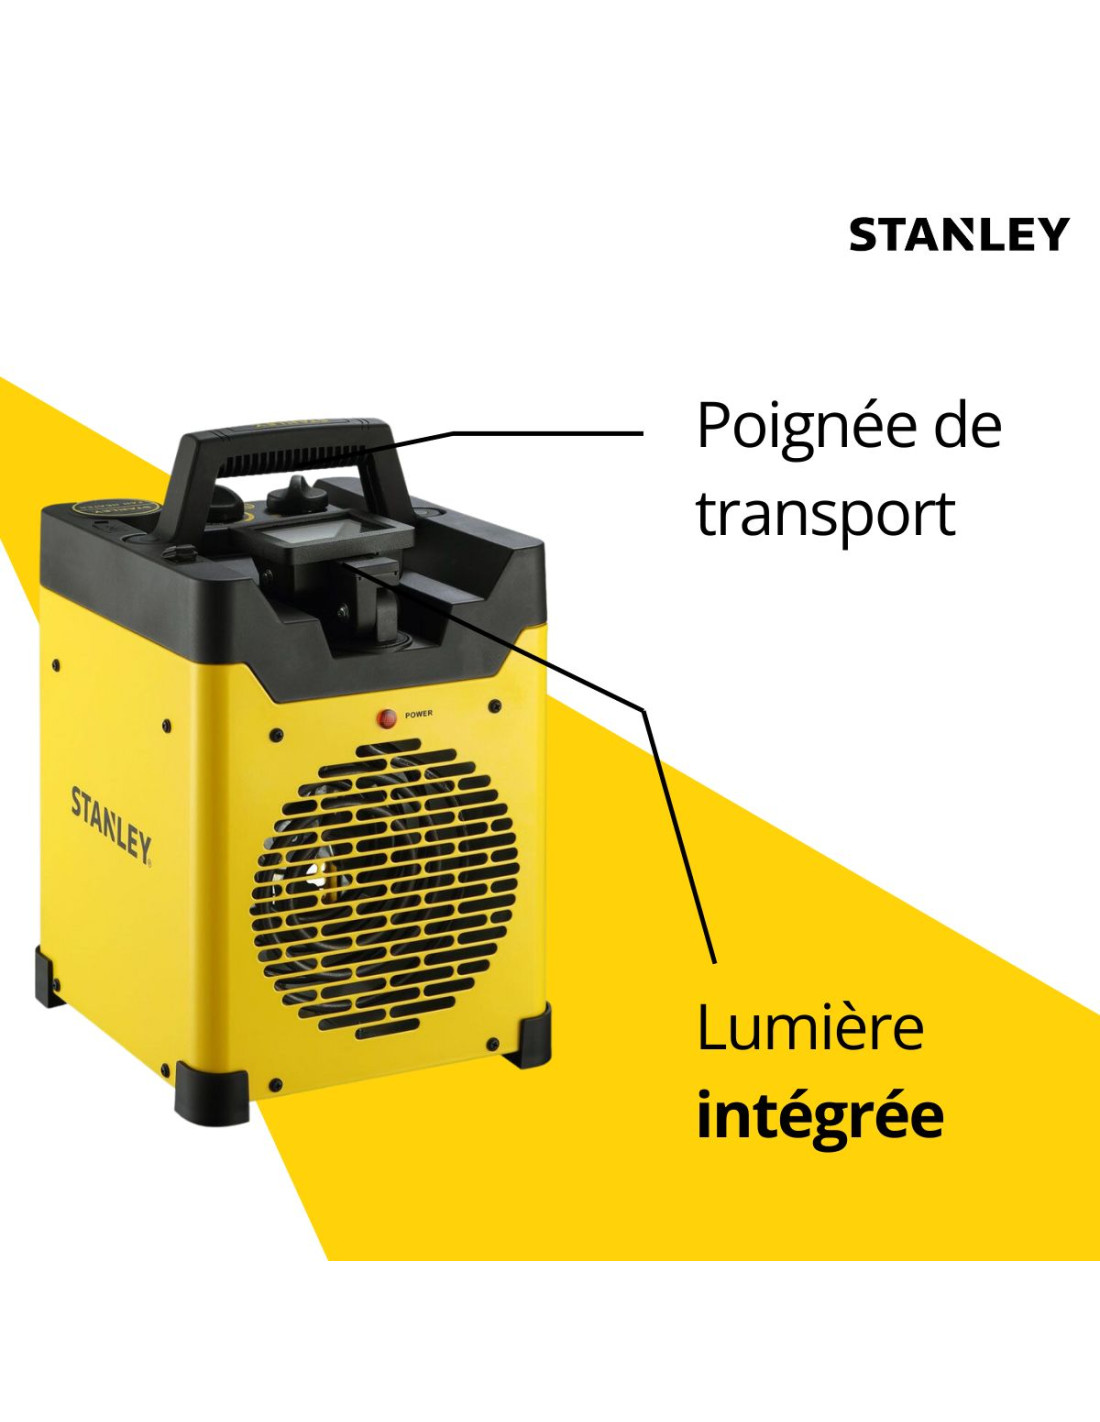 Chauffage électrique de chantier industriel 3000W - Projecteur LED  orientable - 2 positions de chauffe - Jaune - Stanley